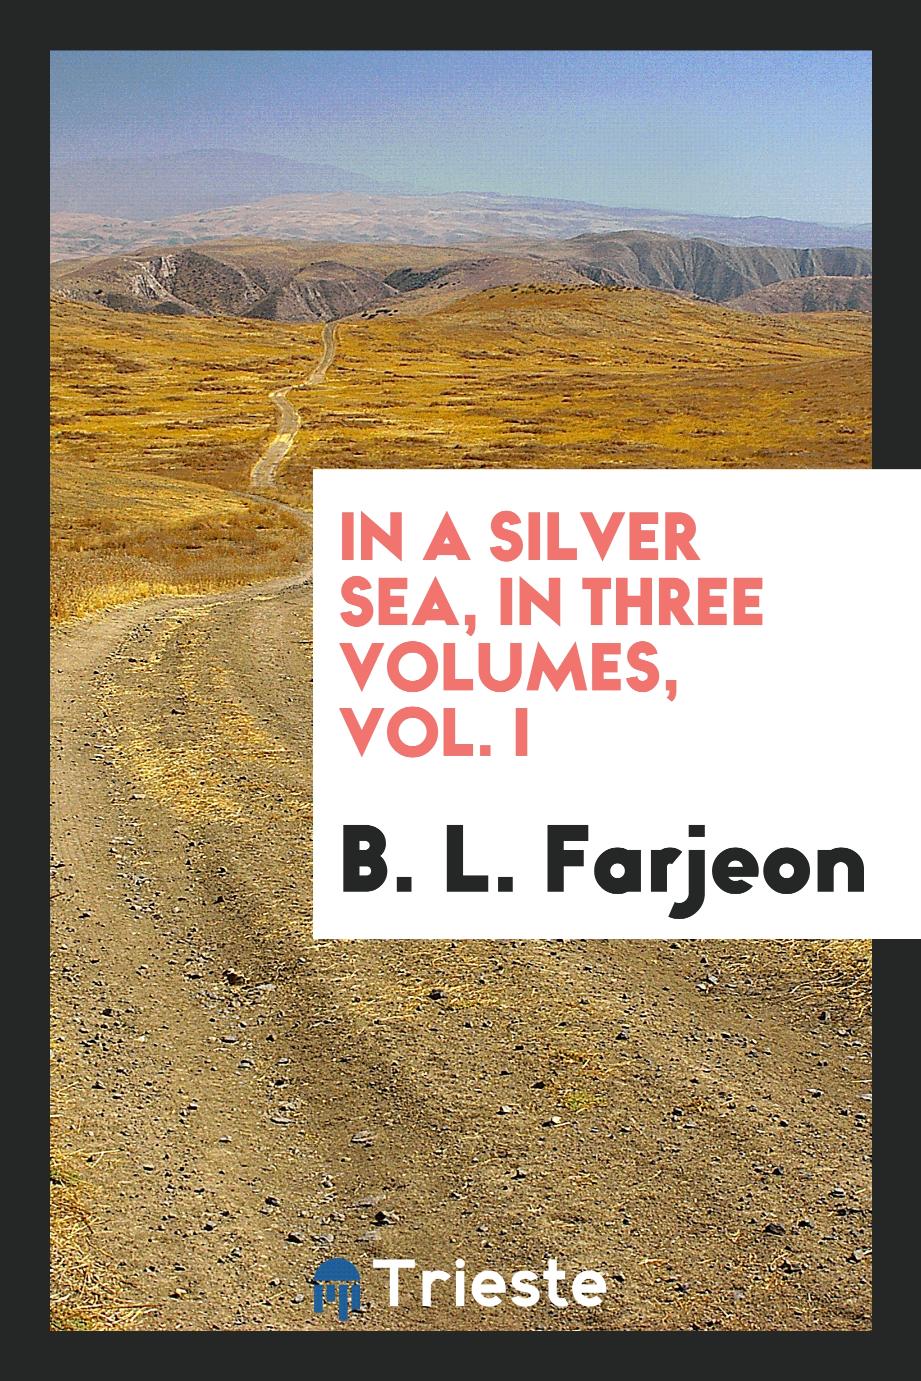 In a silver sea, in three volumes, Vol. I